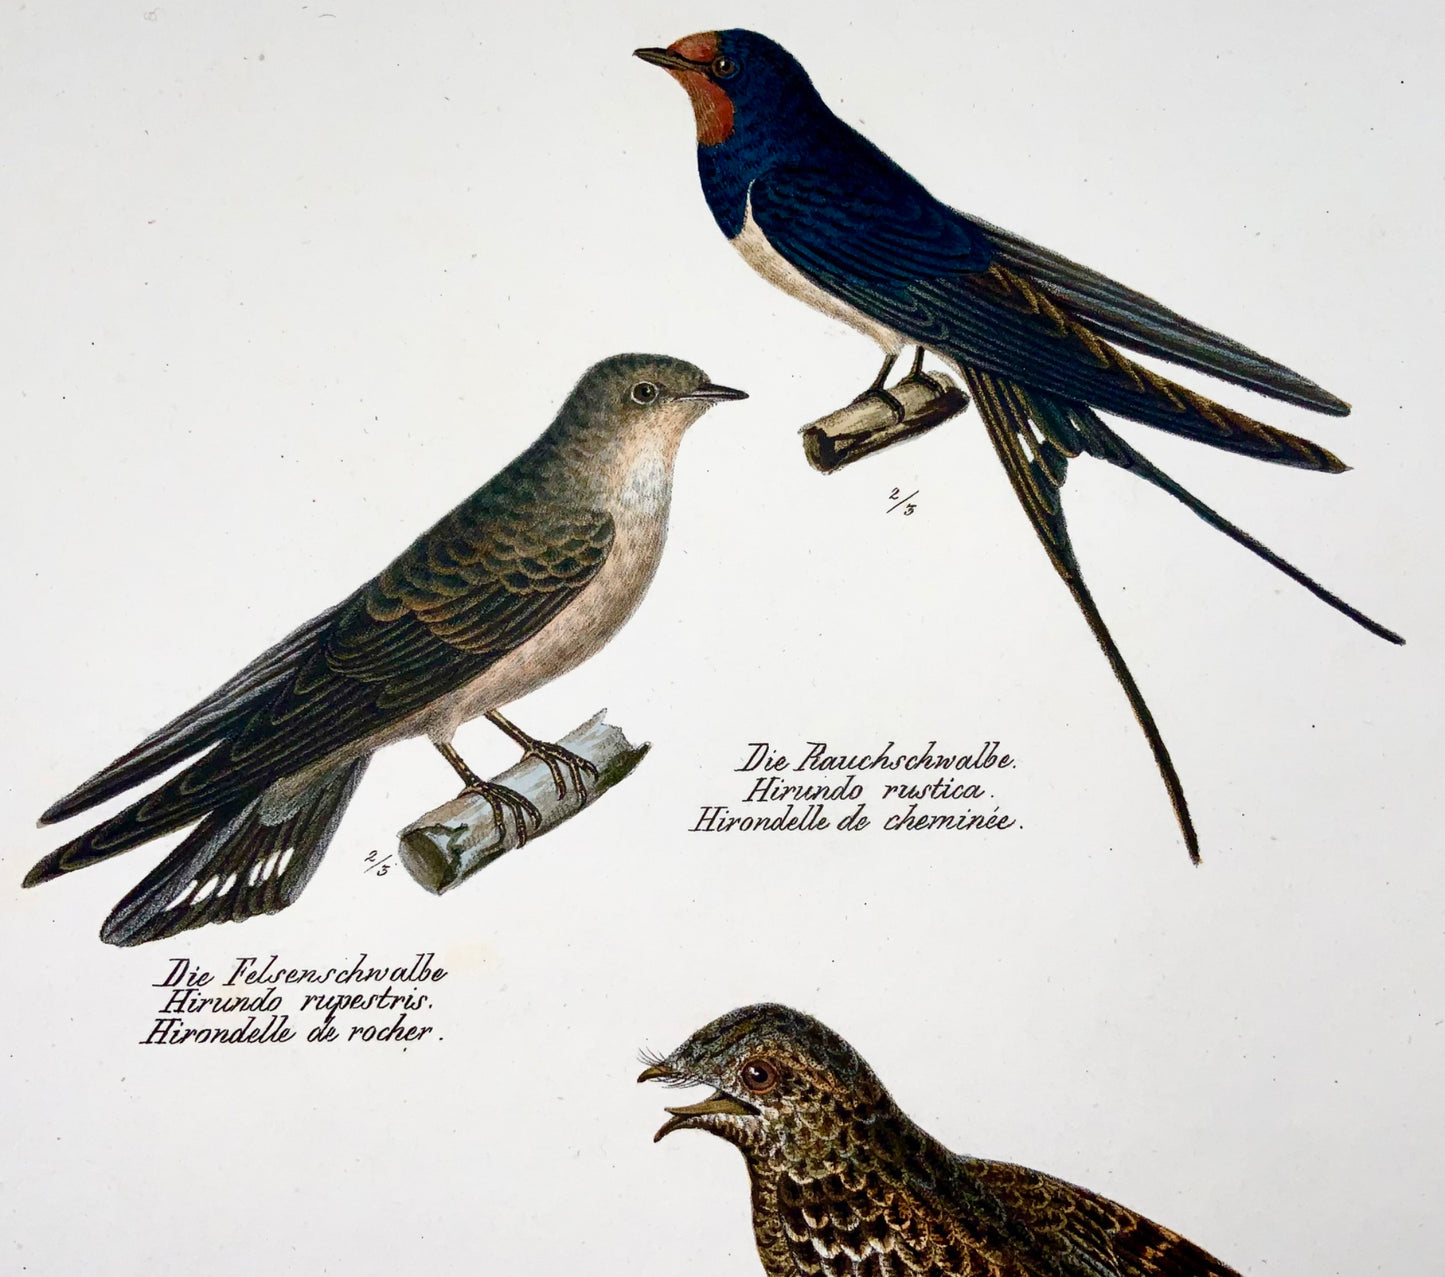 1830 HIRONDELLES, Oiseaux - Ornithologie Brodtmann lithographie FOLIO colorée à la main